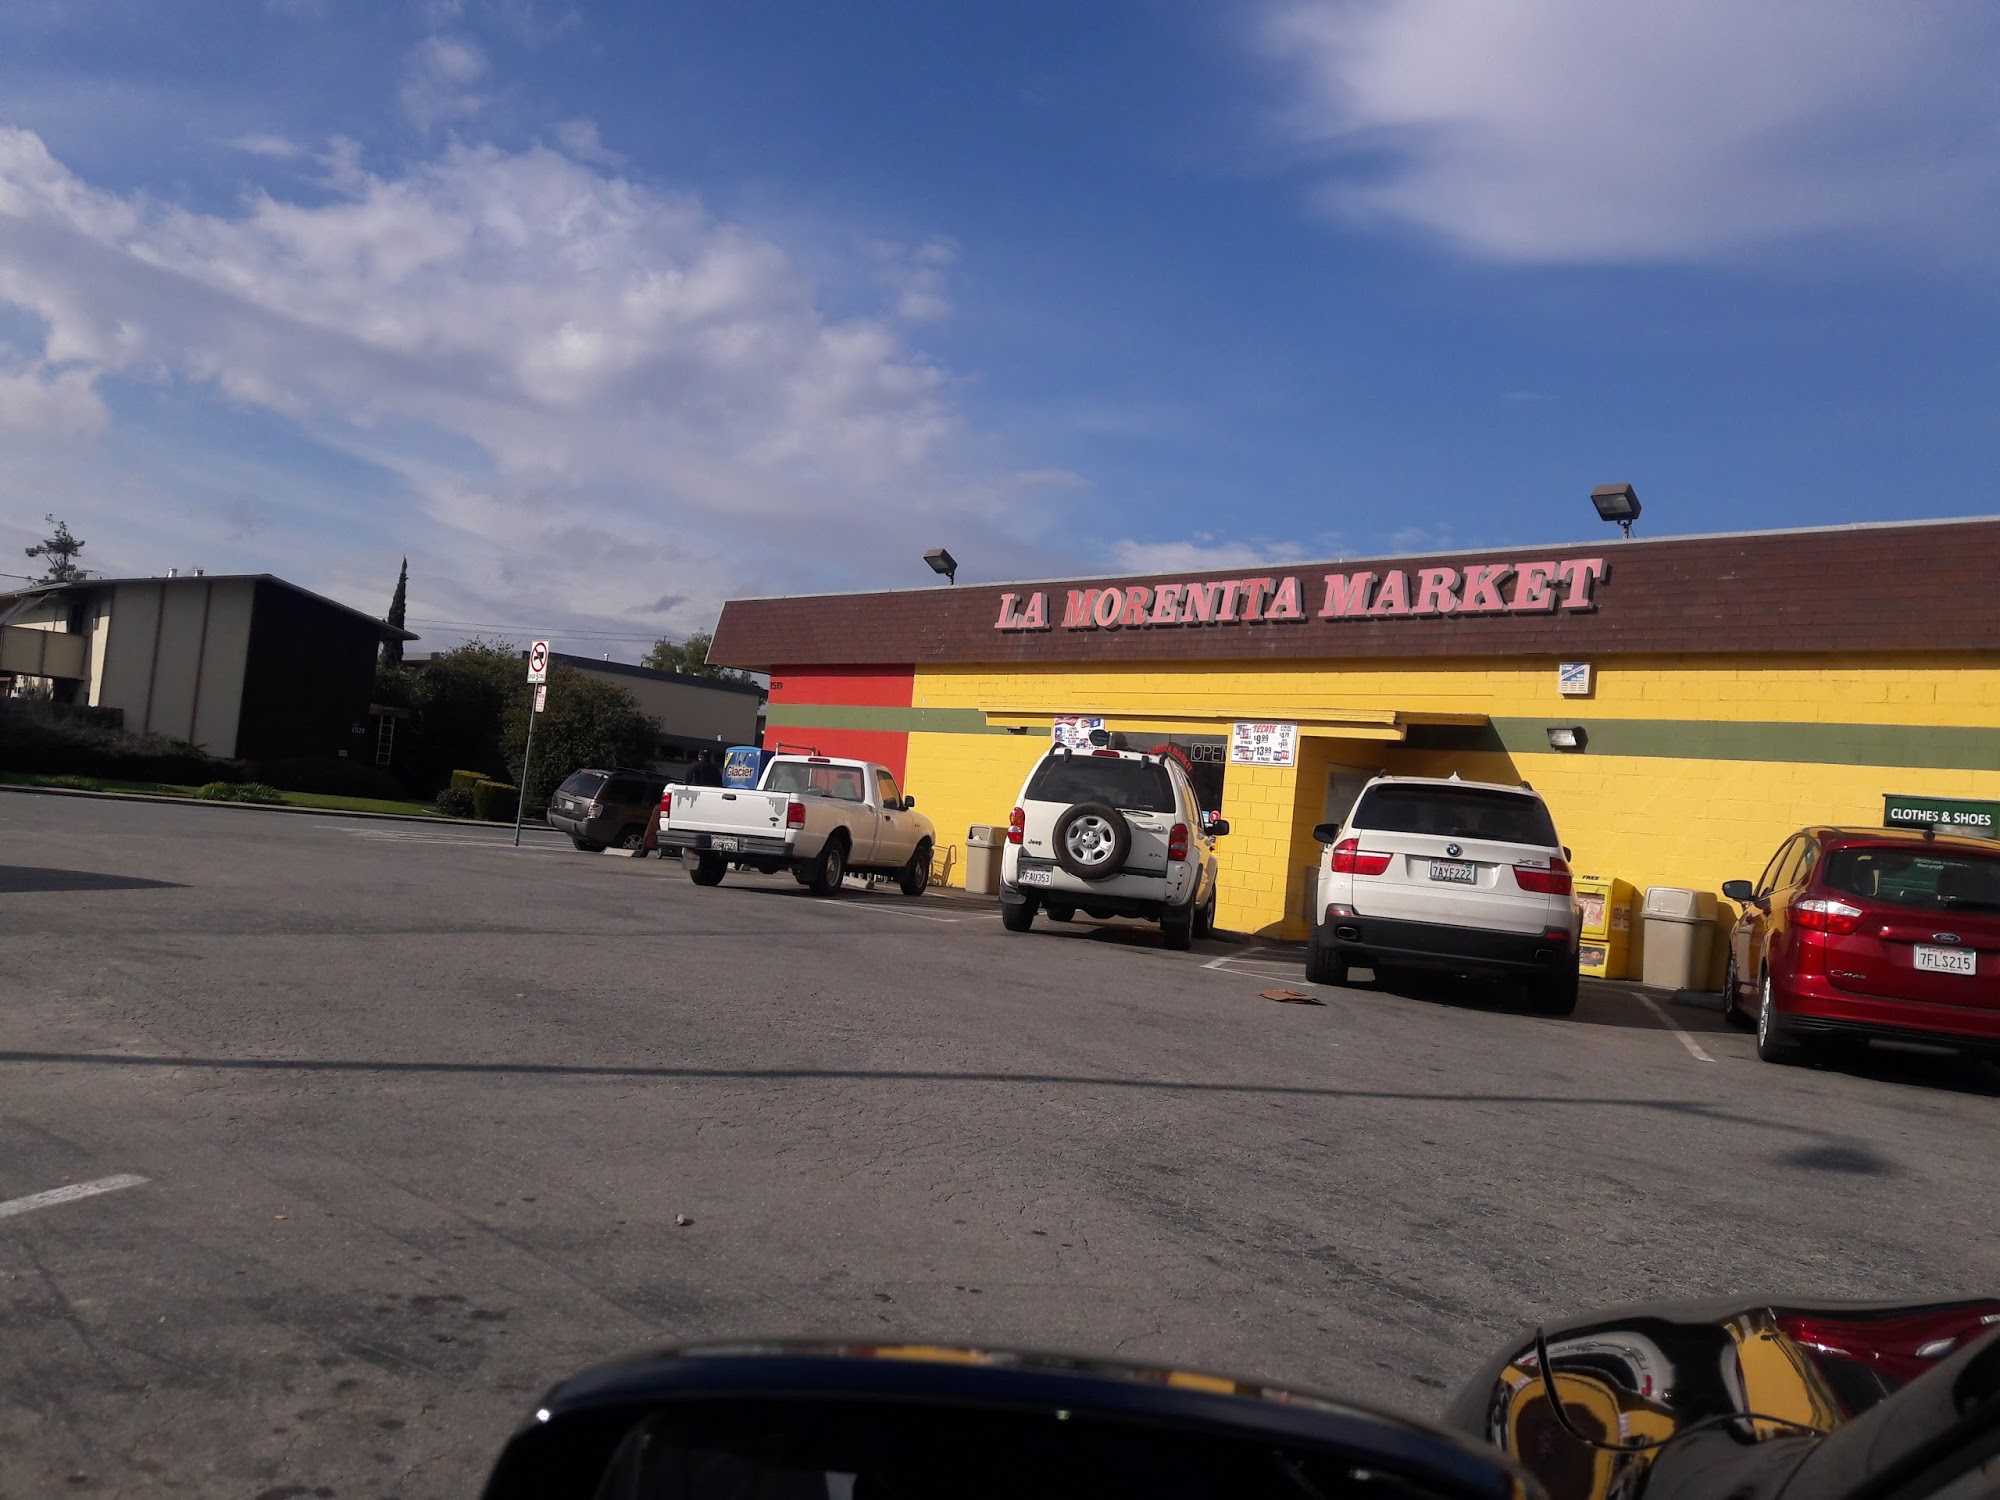 La Morenita Market